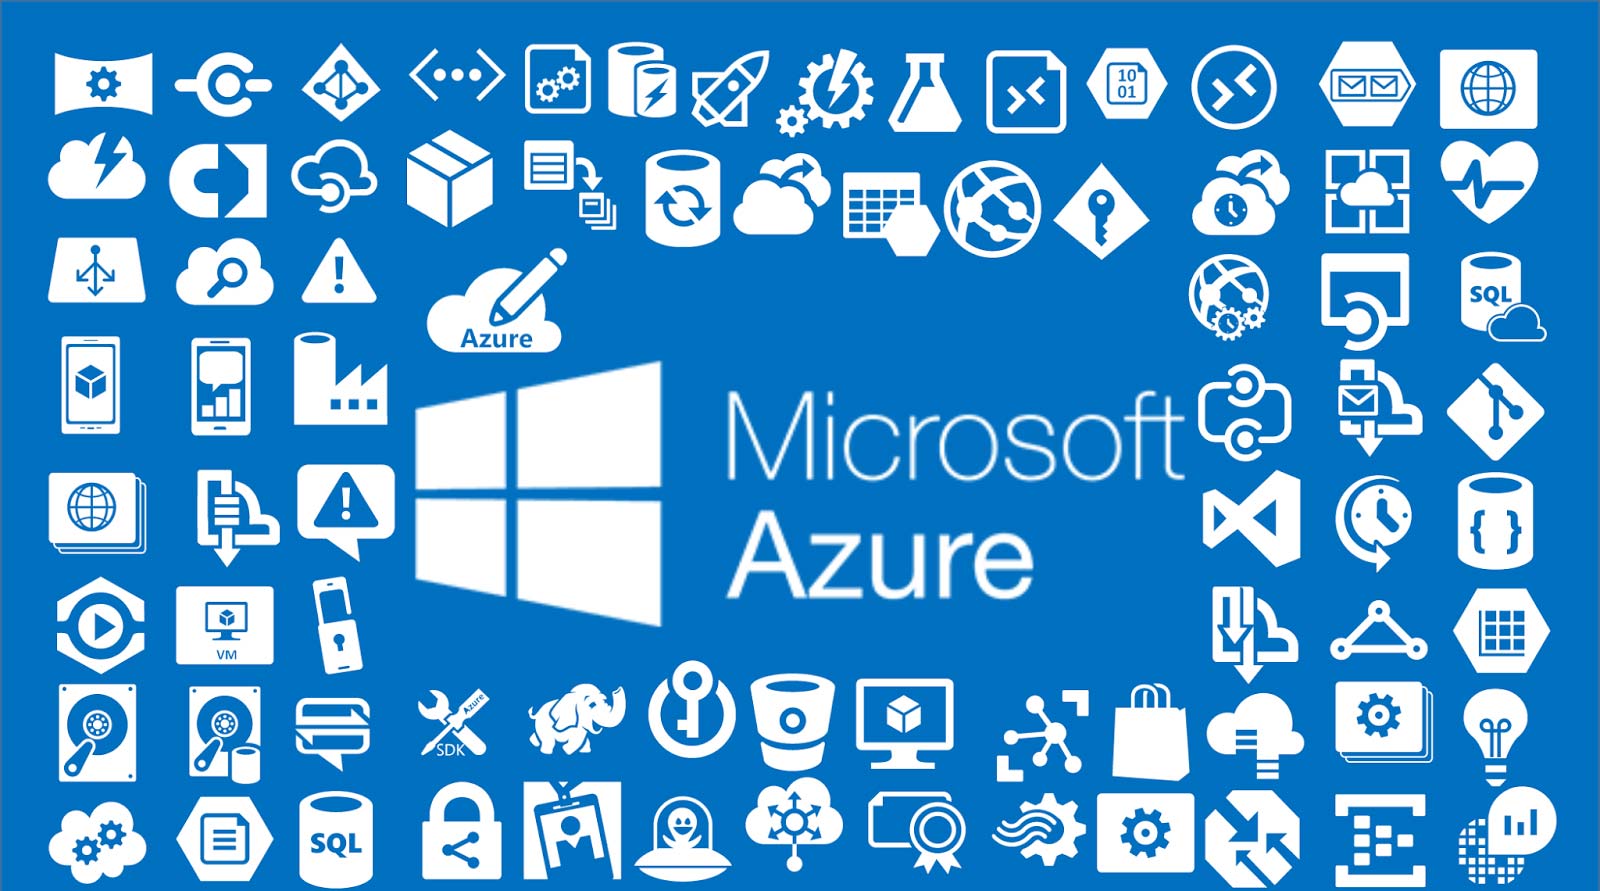 Microsoft Azure in Single image MMOSITE - Thông tin công nghệ, review, thủ thuật PC, gaming